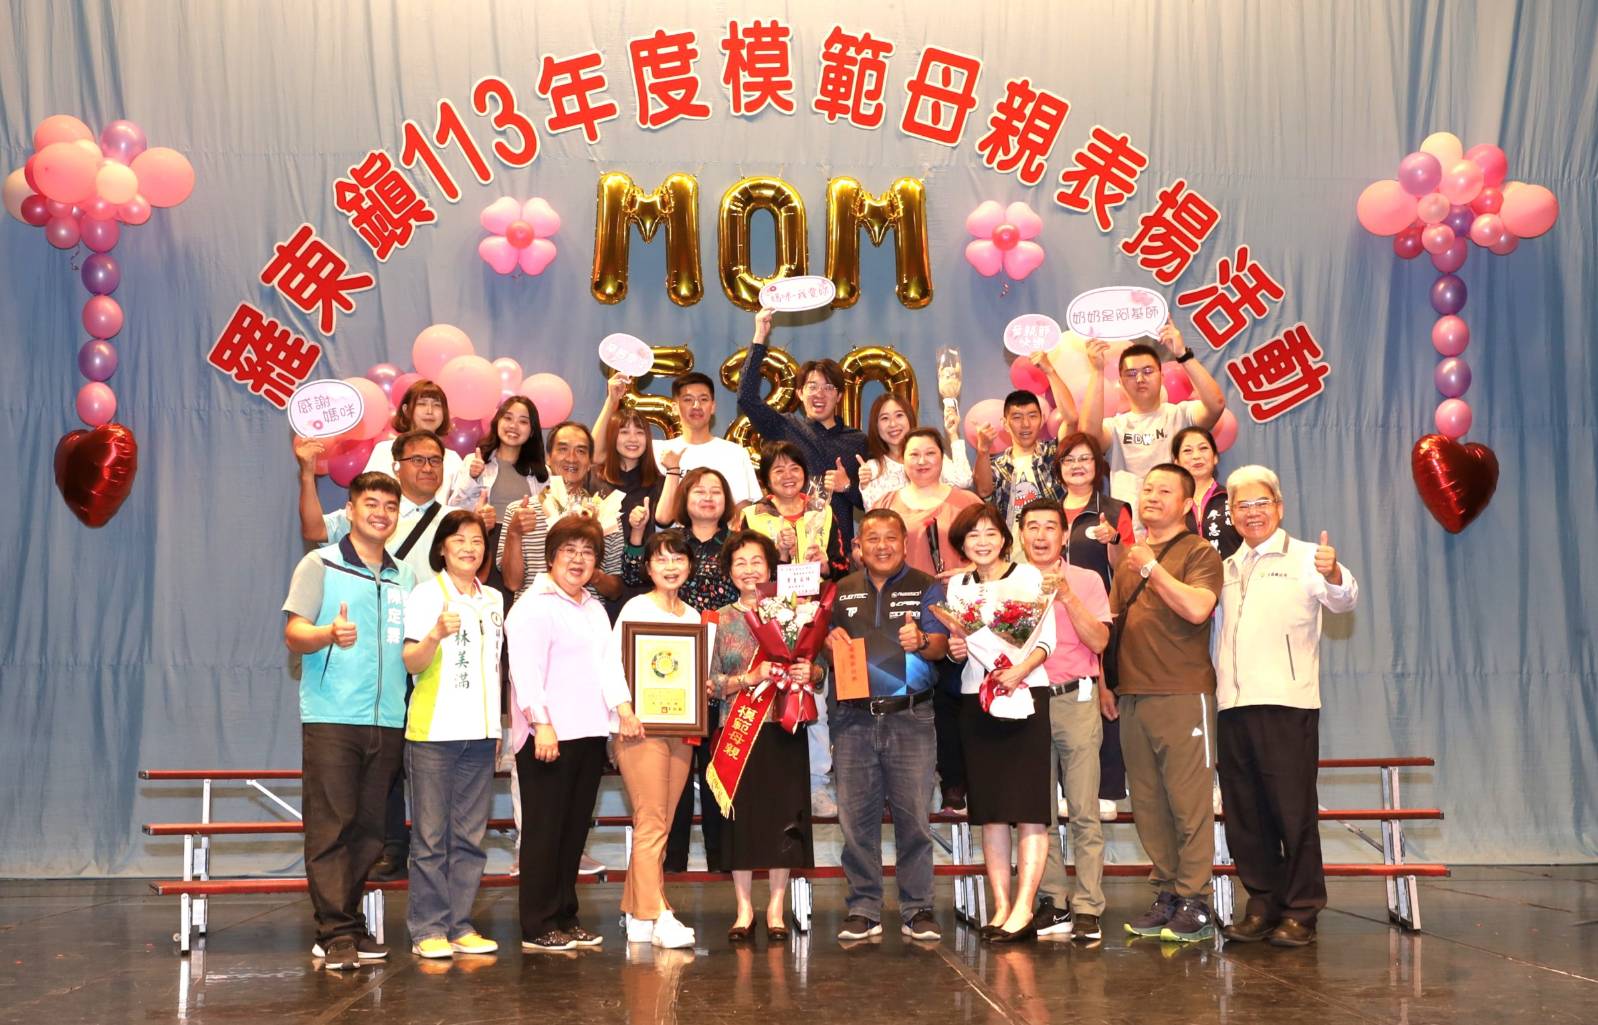 羅東鎮慶祝母親節